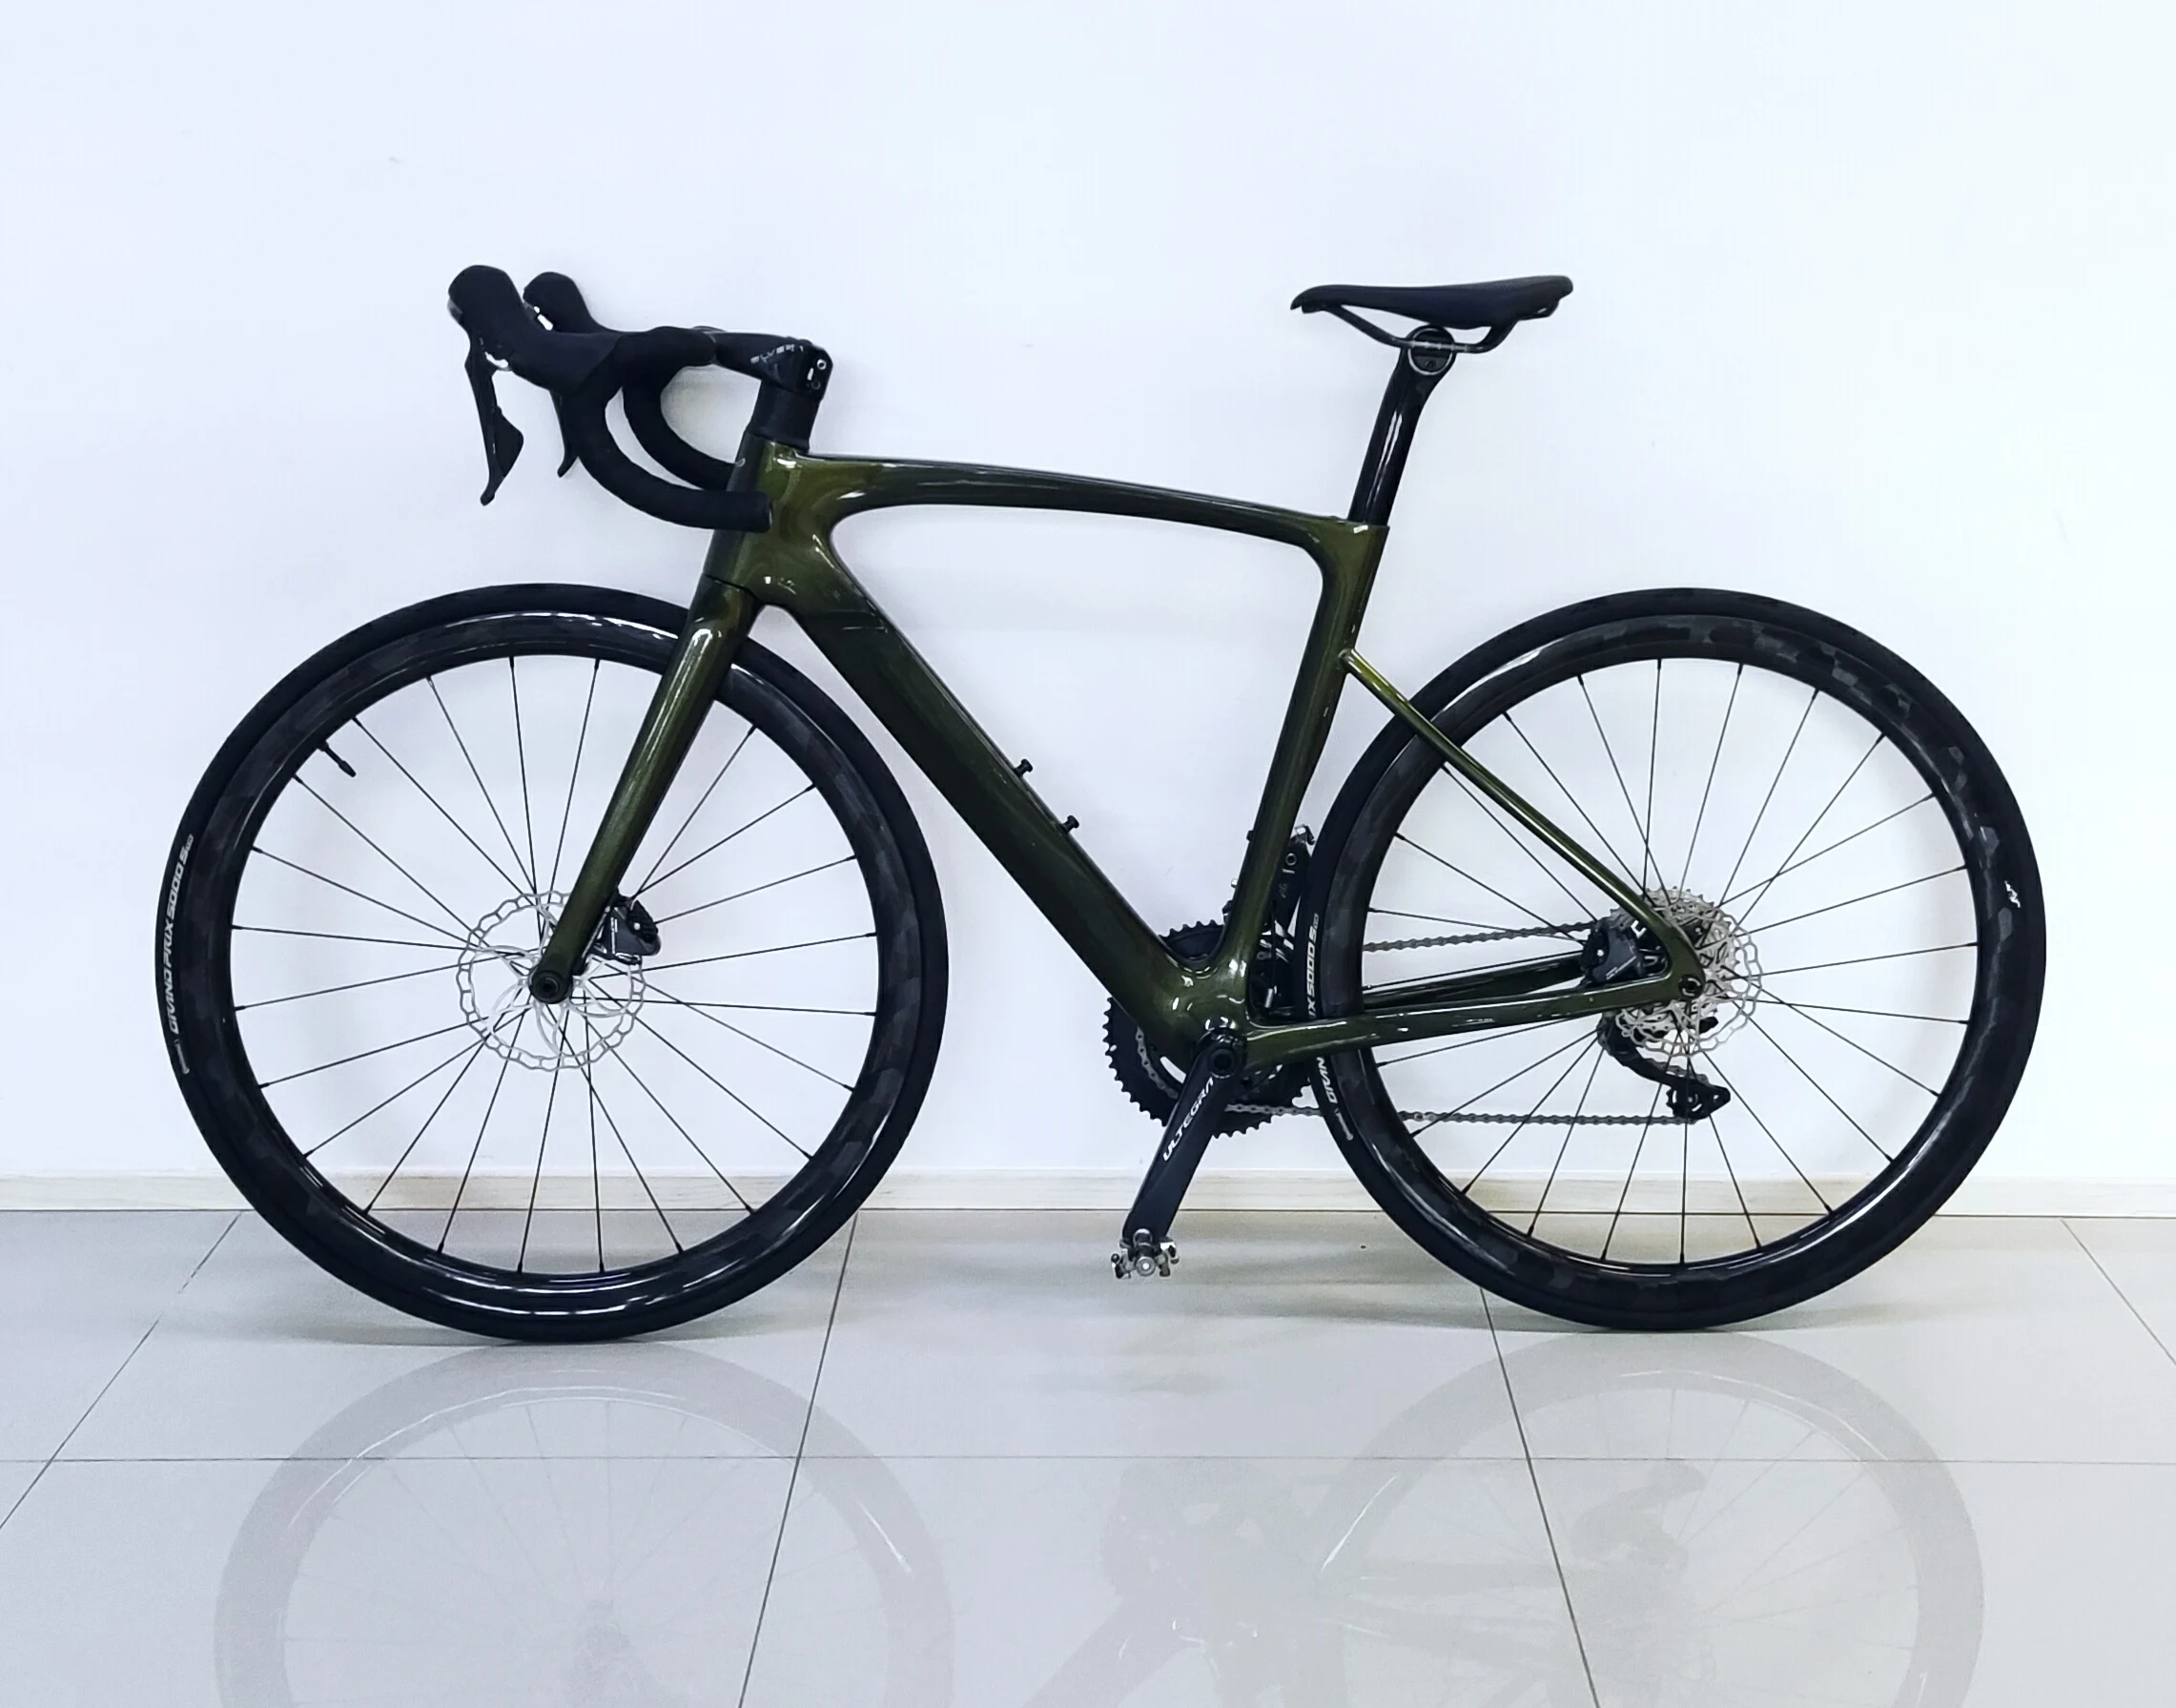 חדש פחמן מסגרות אופני כביש קרבון אופניים מסגרת כביש 700c מוסתר כבל דיסק בלם 140MM - 4